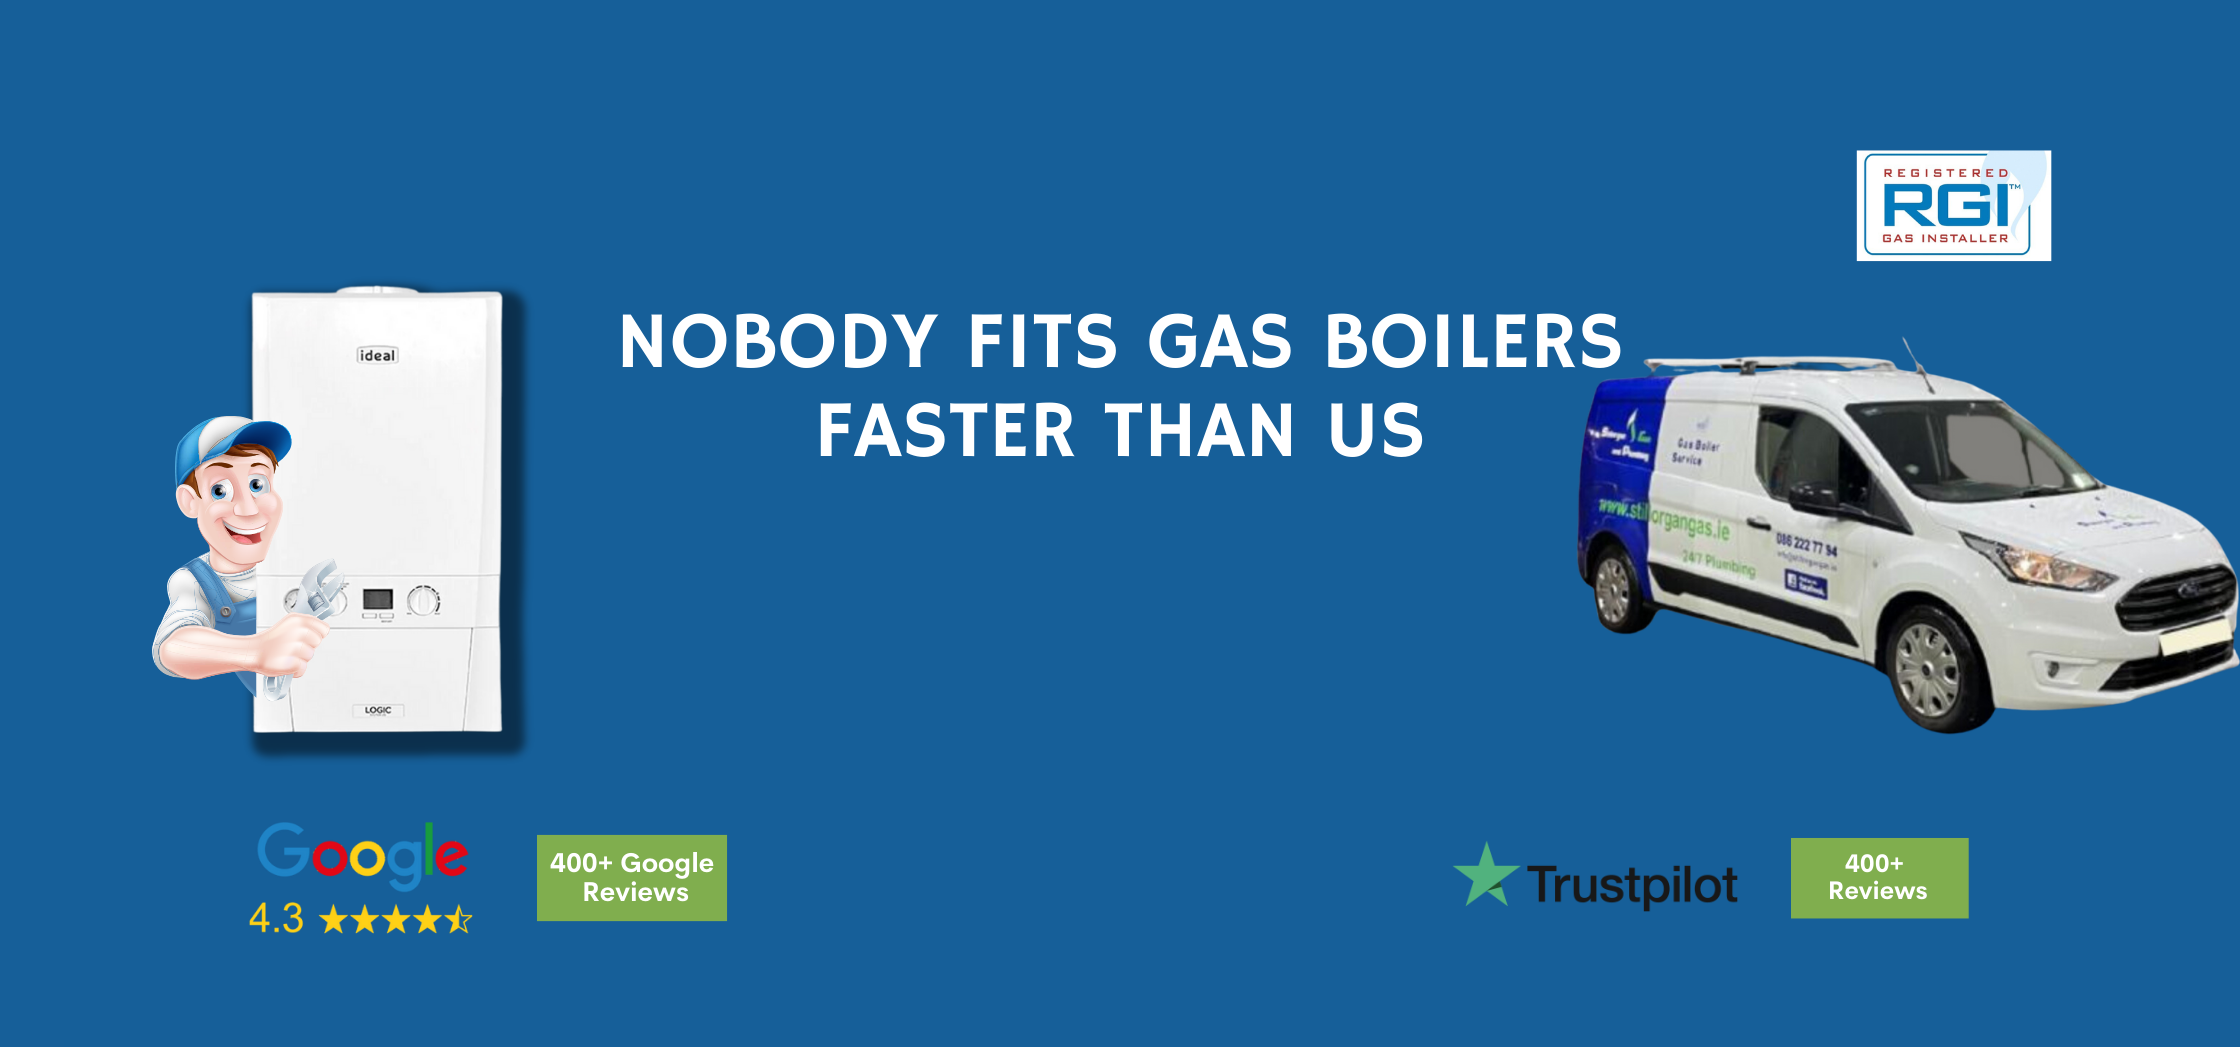 Gas boiler service dublin